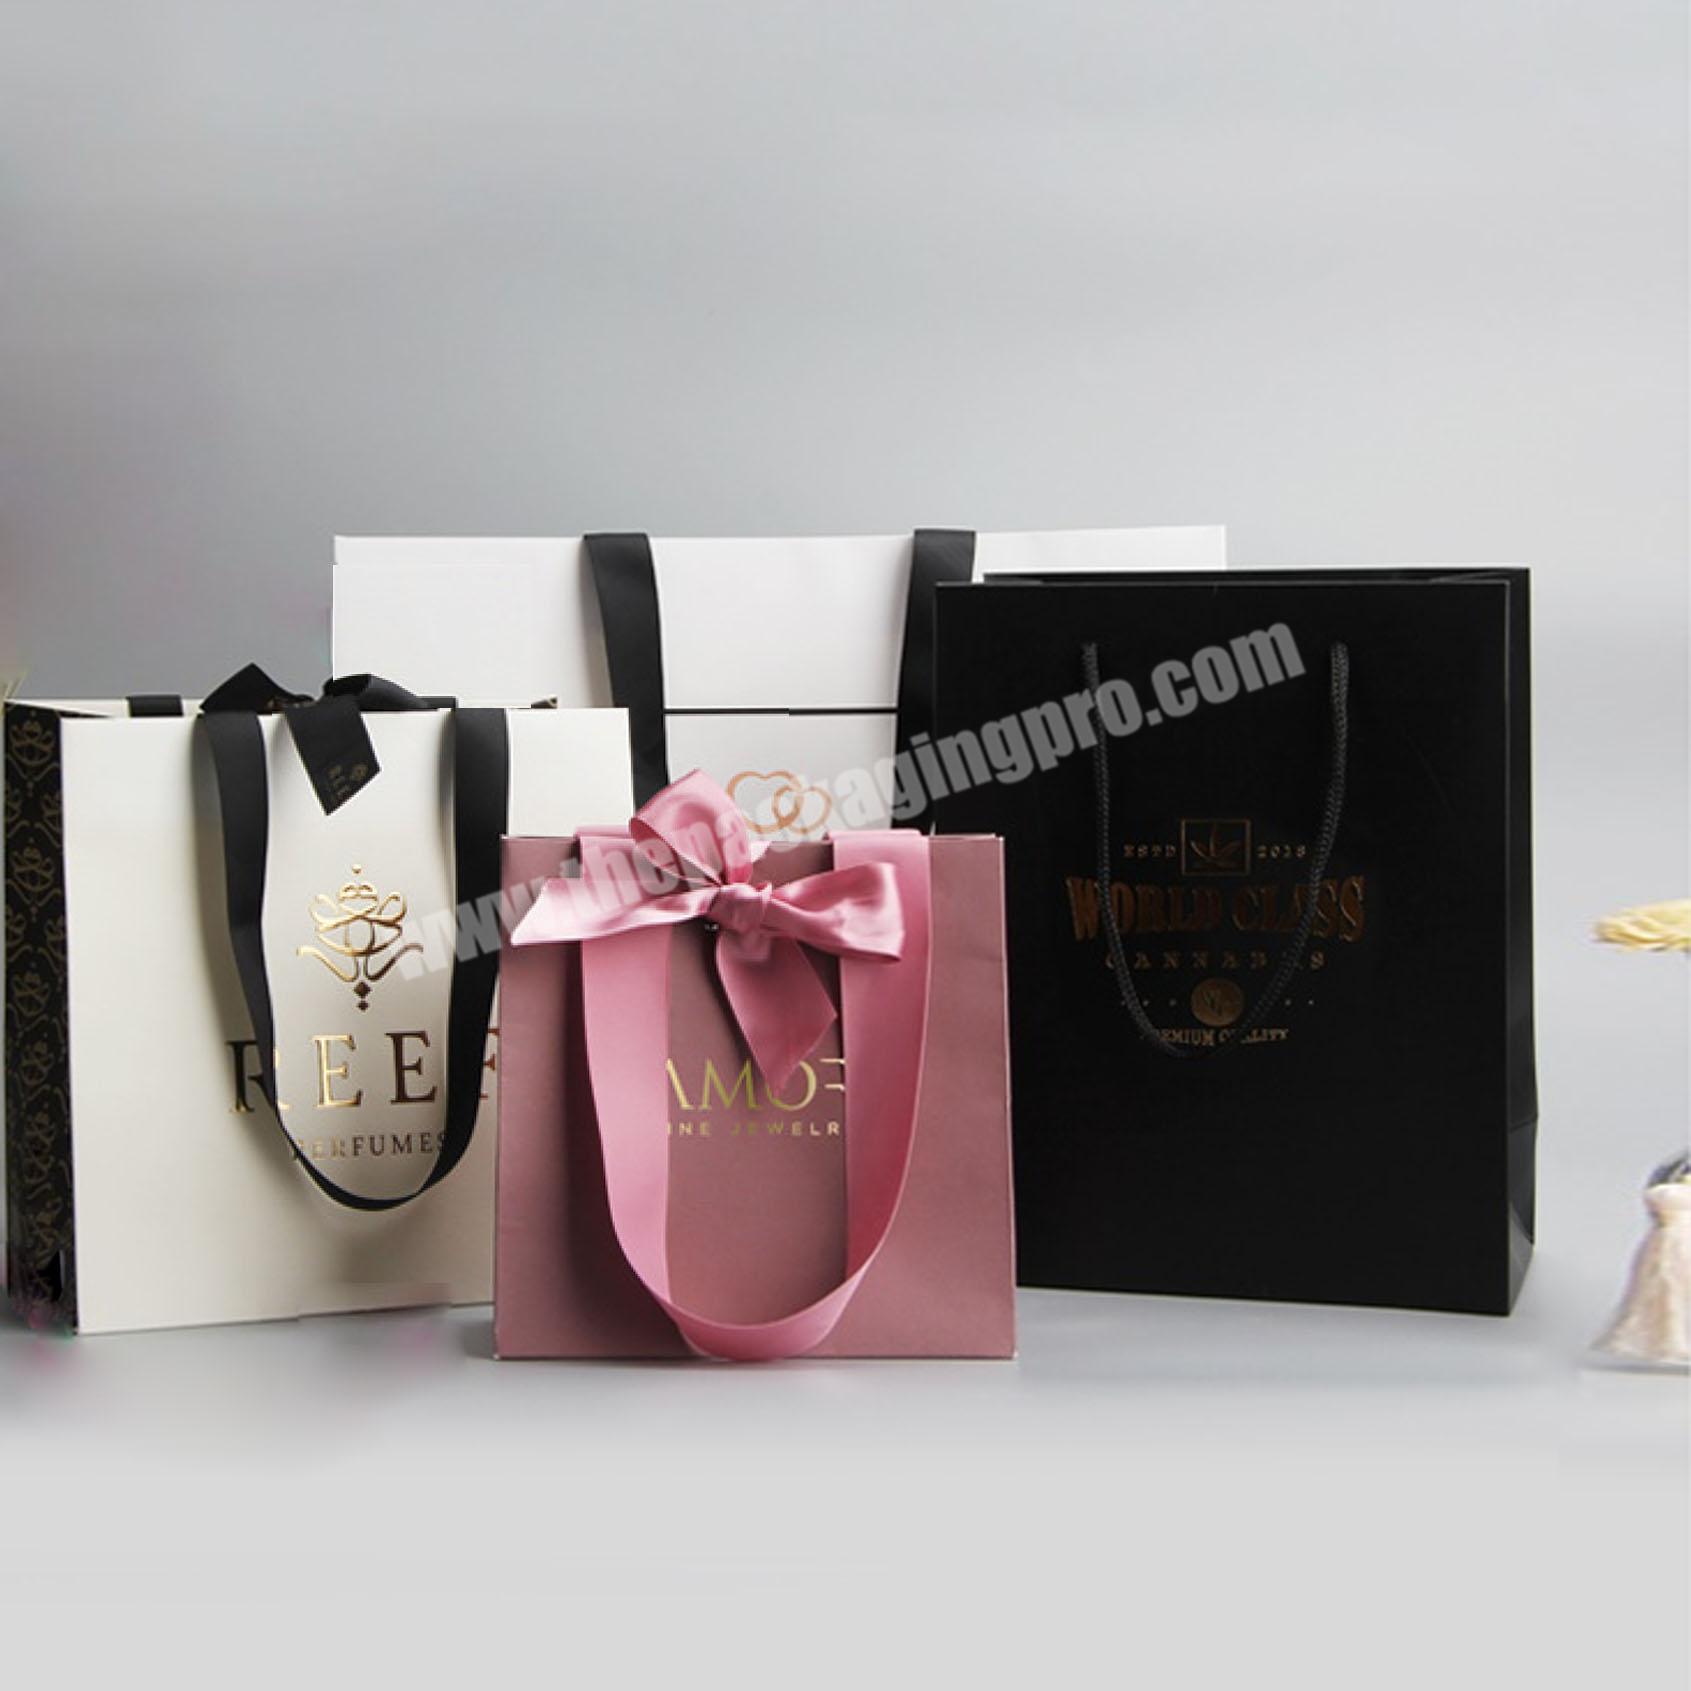 Bespoke Luxury Gift Bags